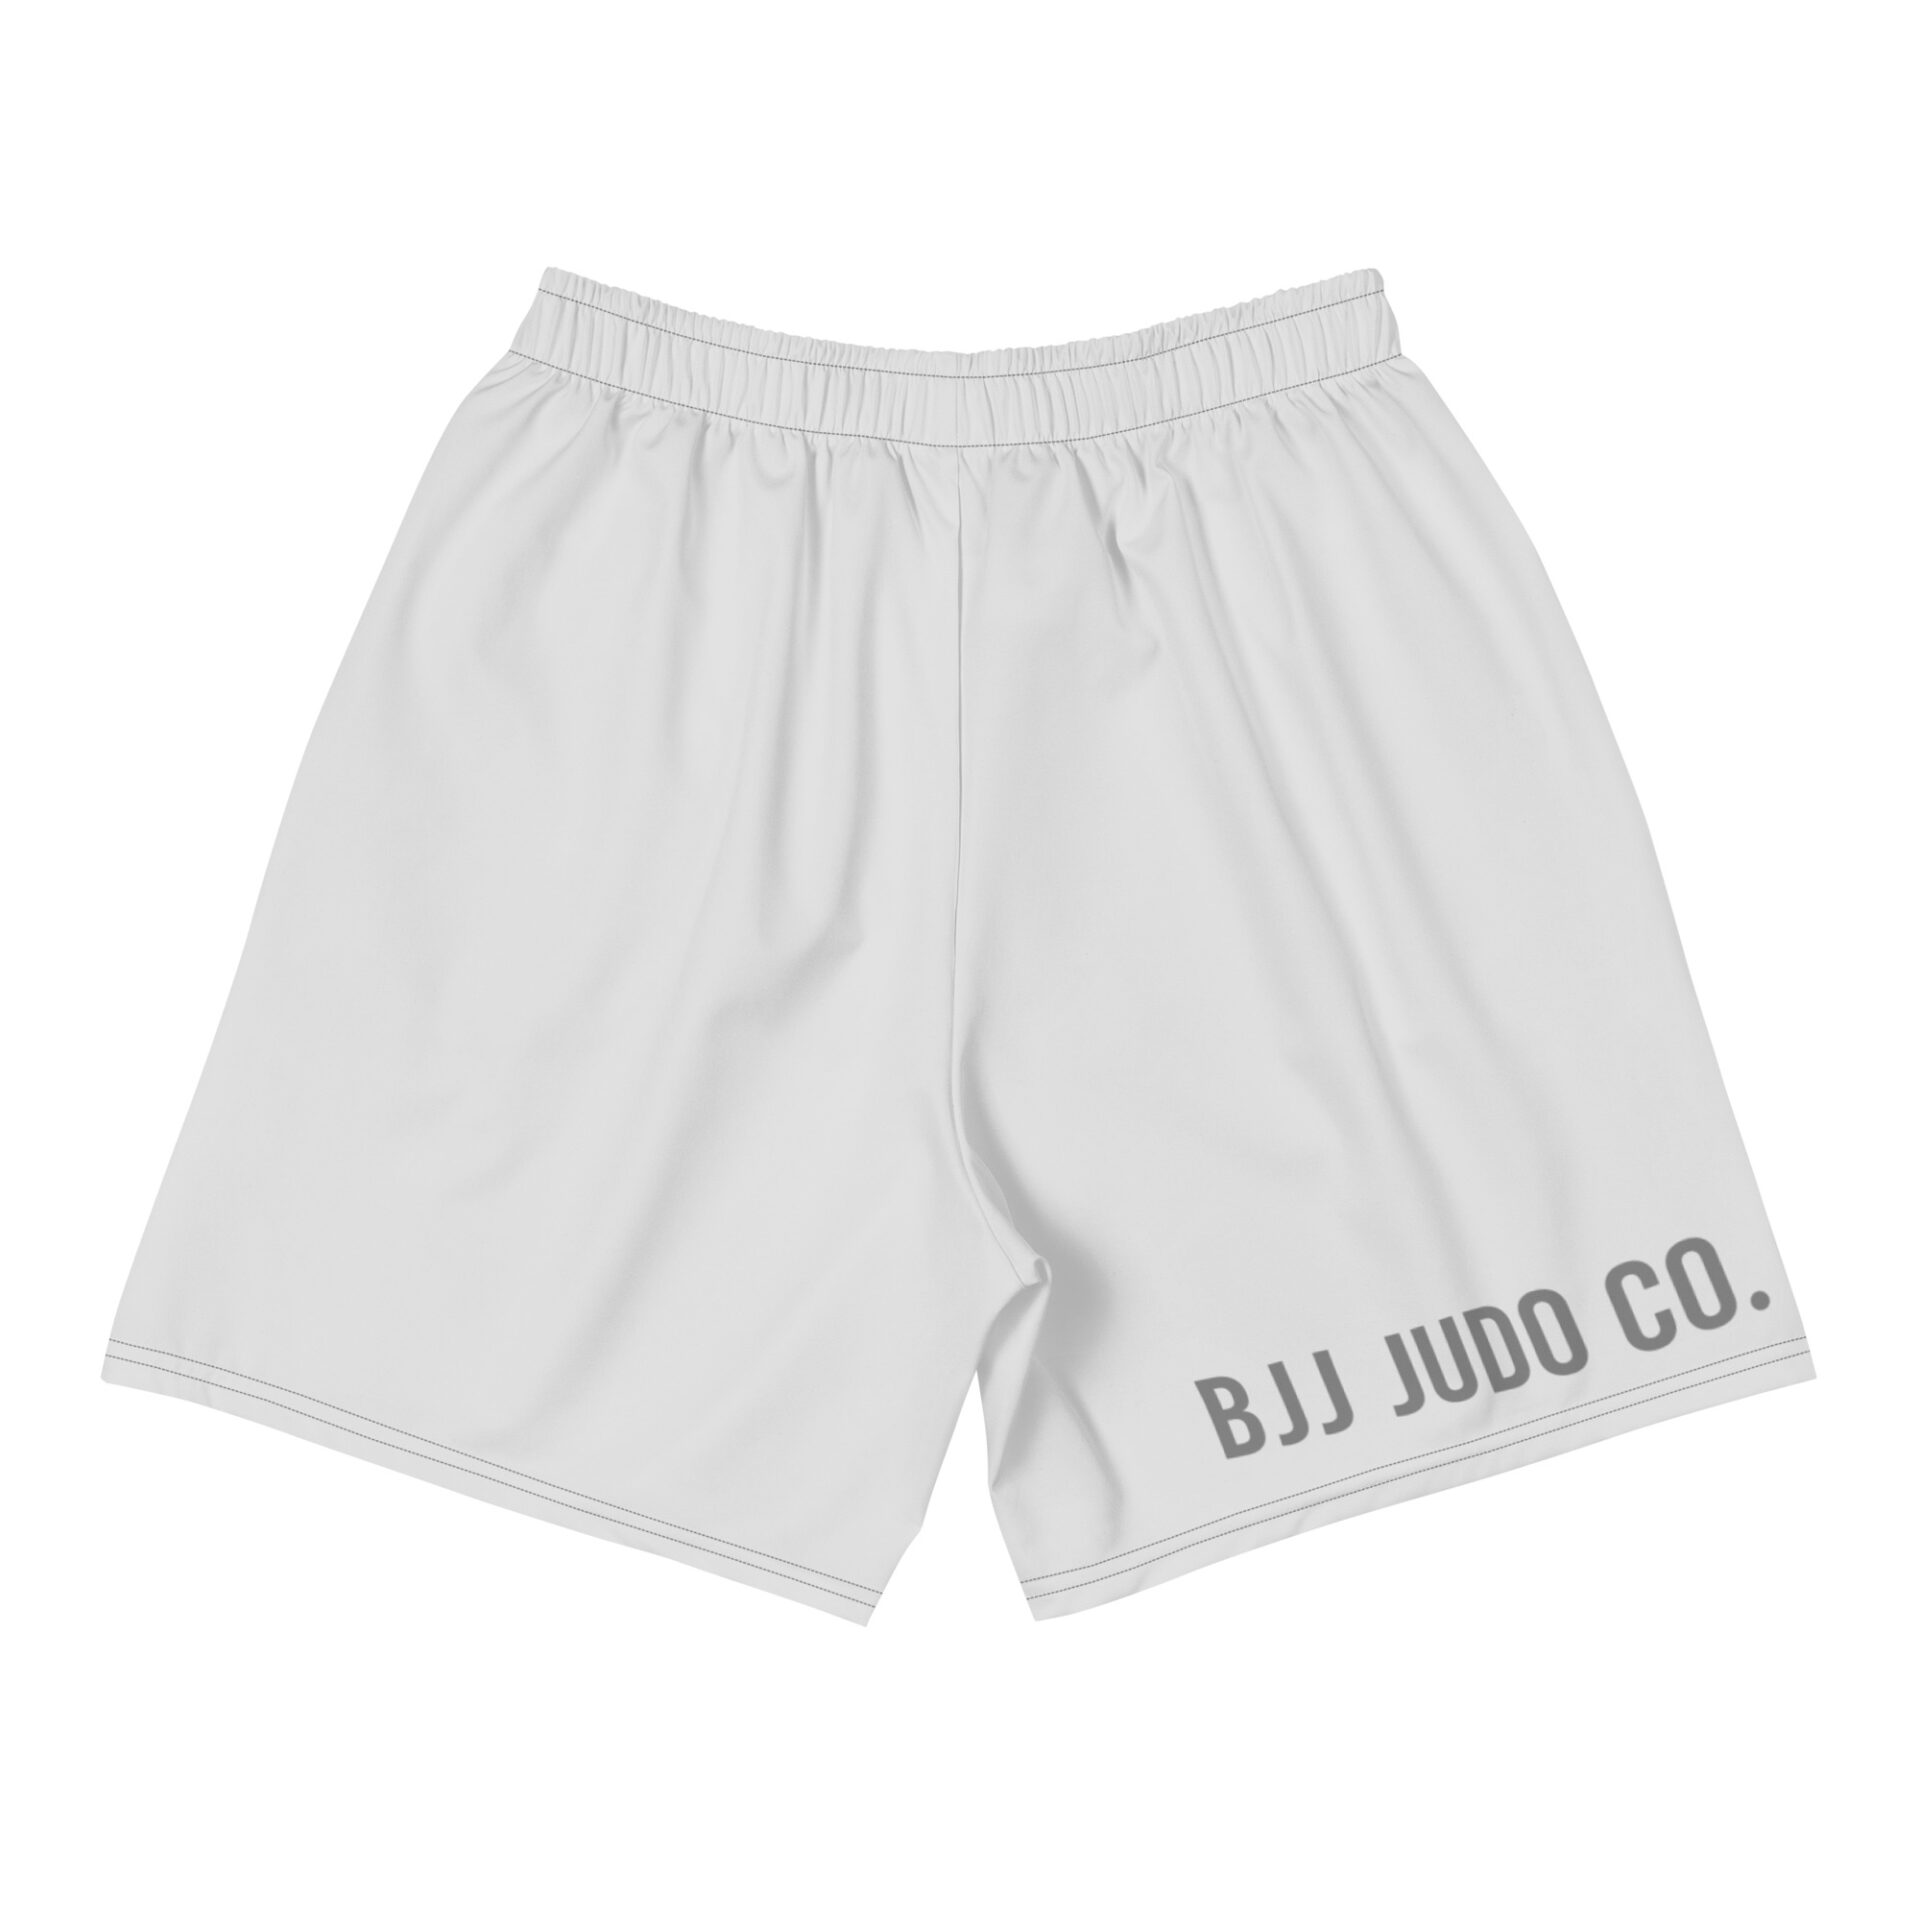 White Judo Shorts – BJJ JUDO CO.